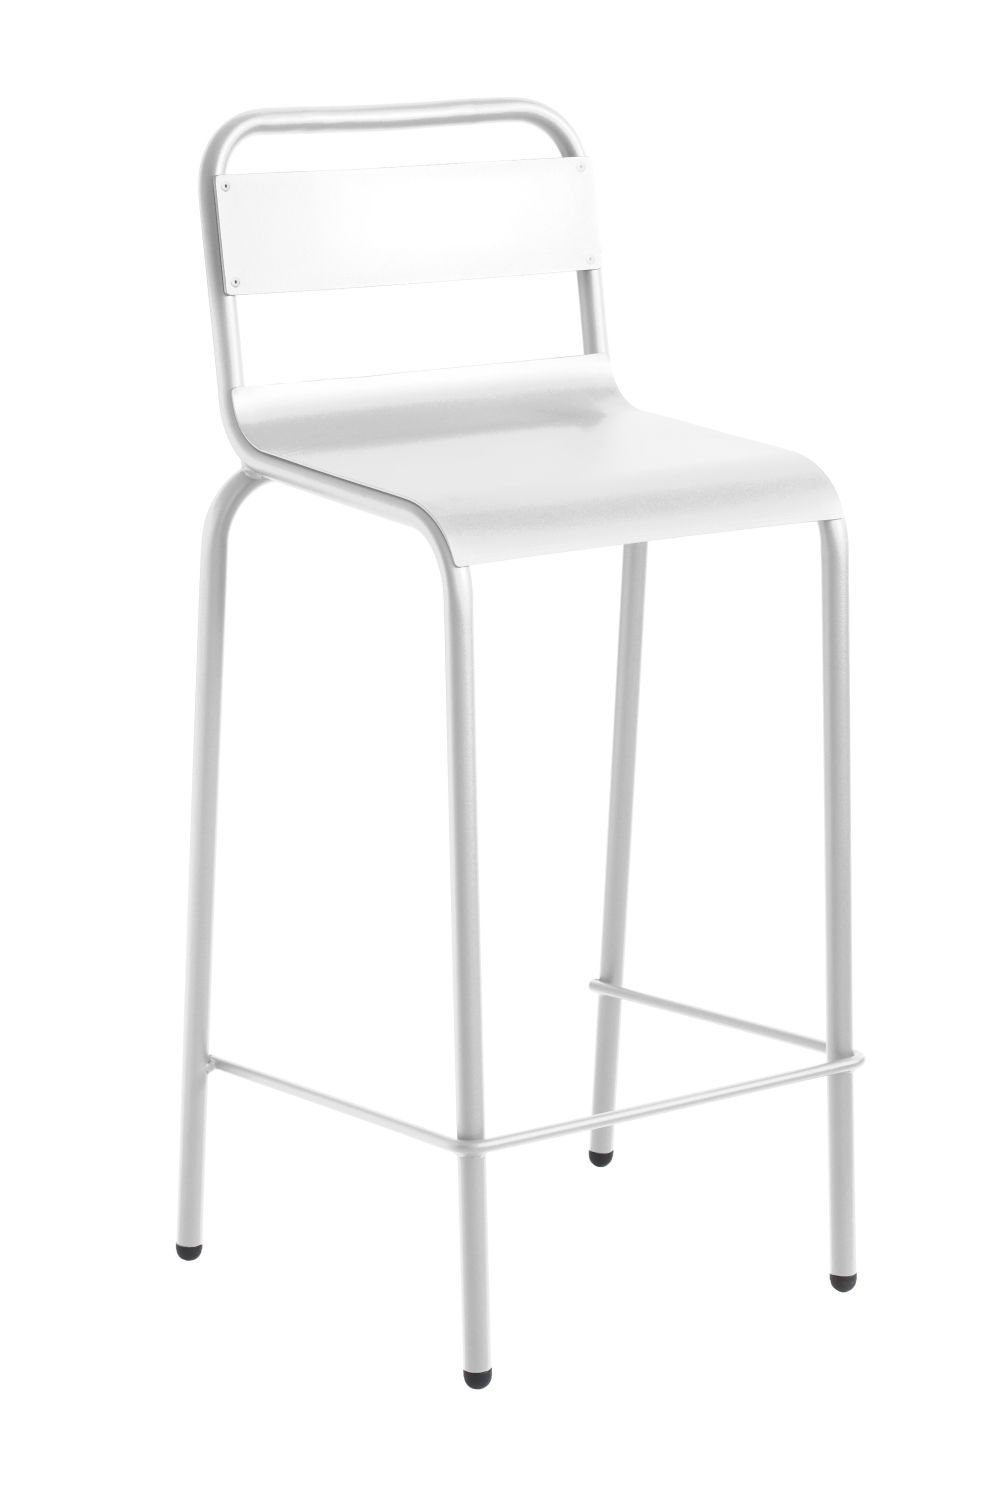 ISIMAR - Barová židle ANGLET vysoká - bílá - 